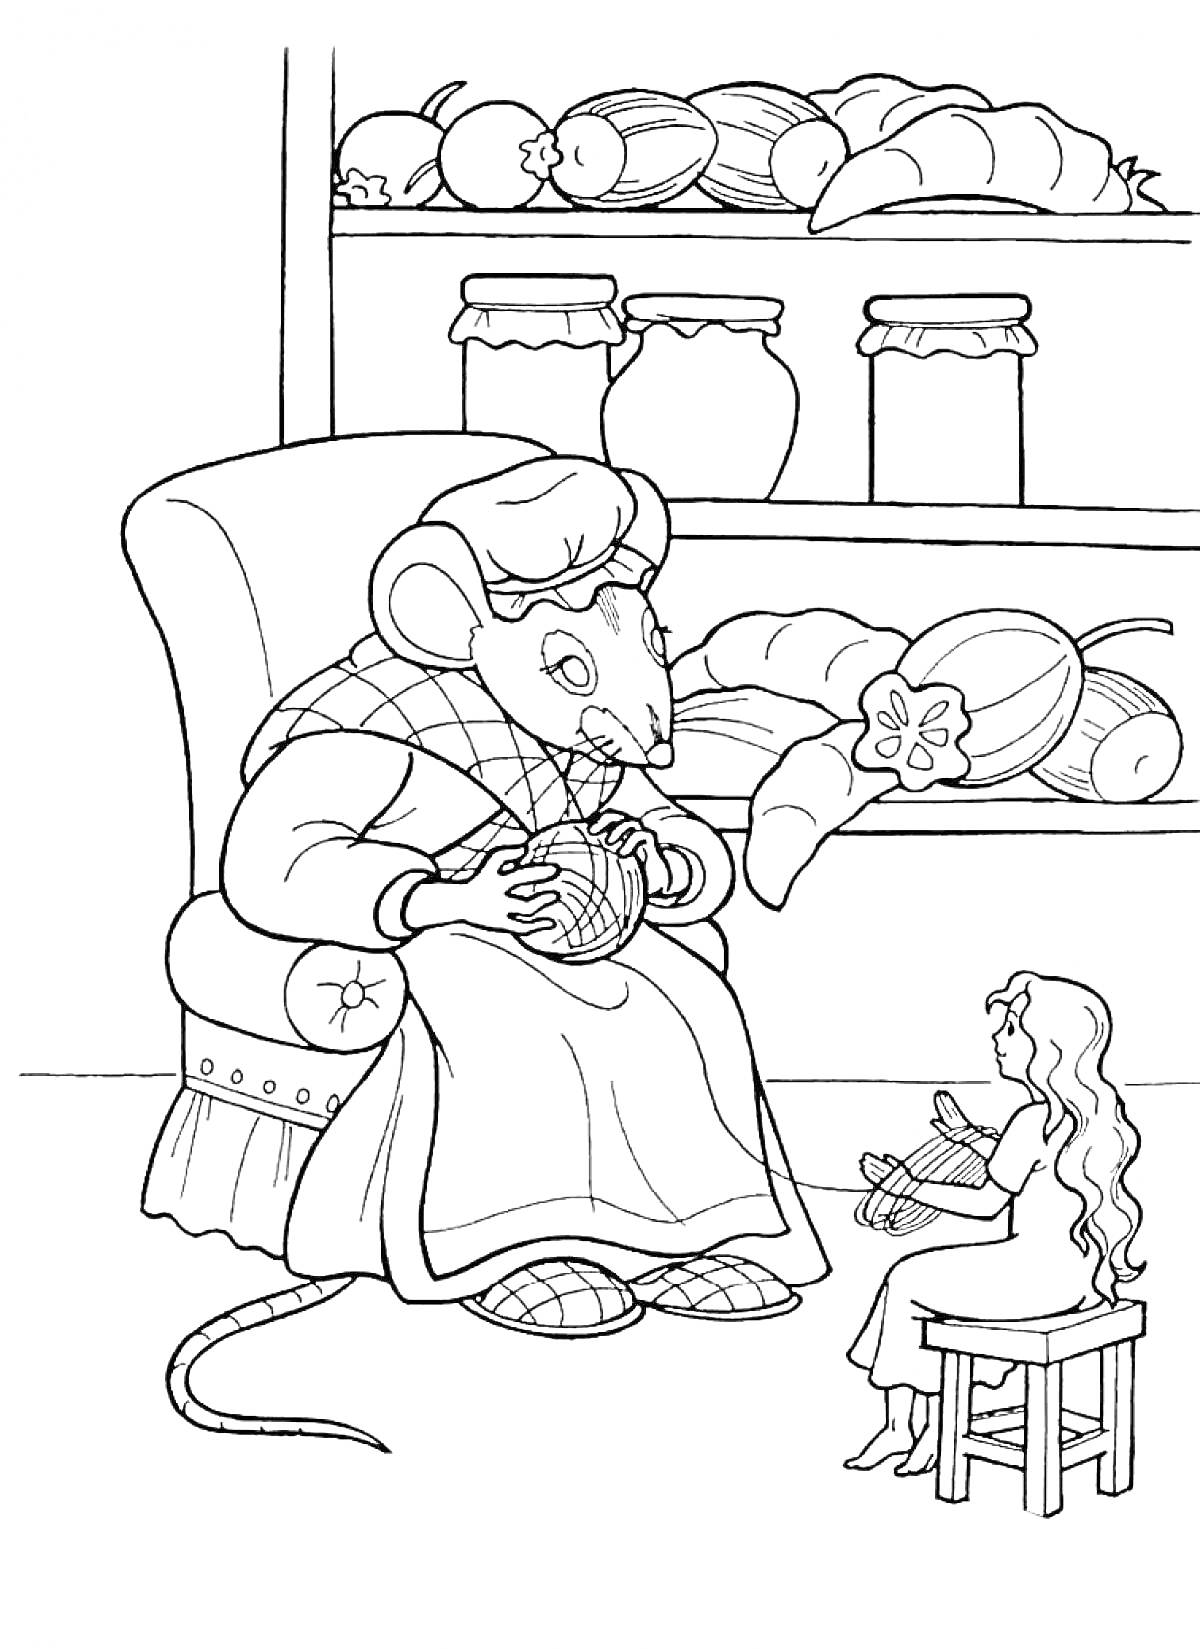 Мышь в кресле и Дюймовочка с пряжей на фоне полки с банками и овощами